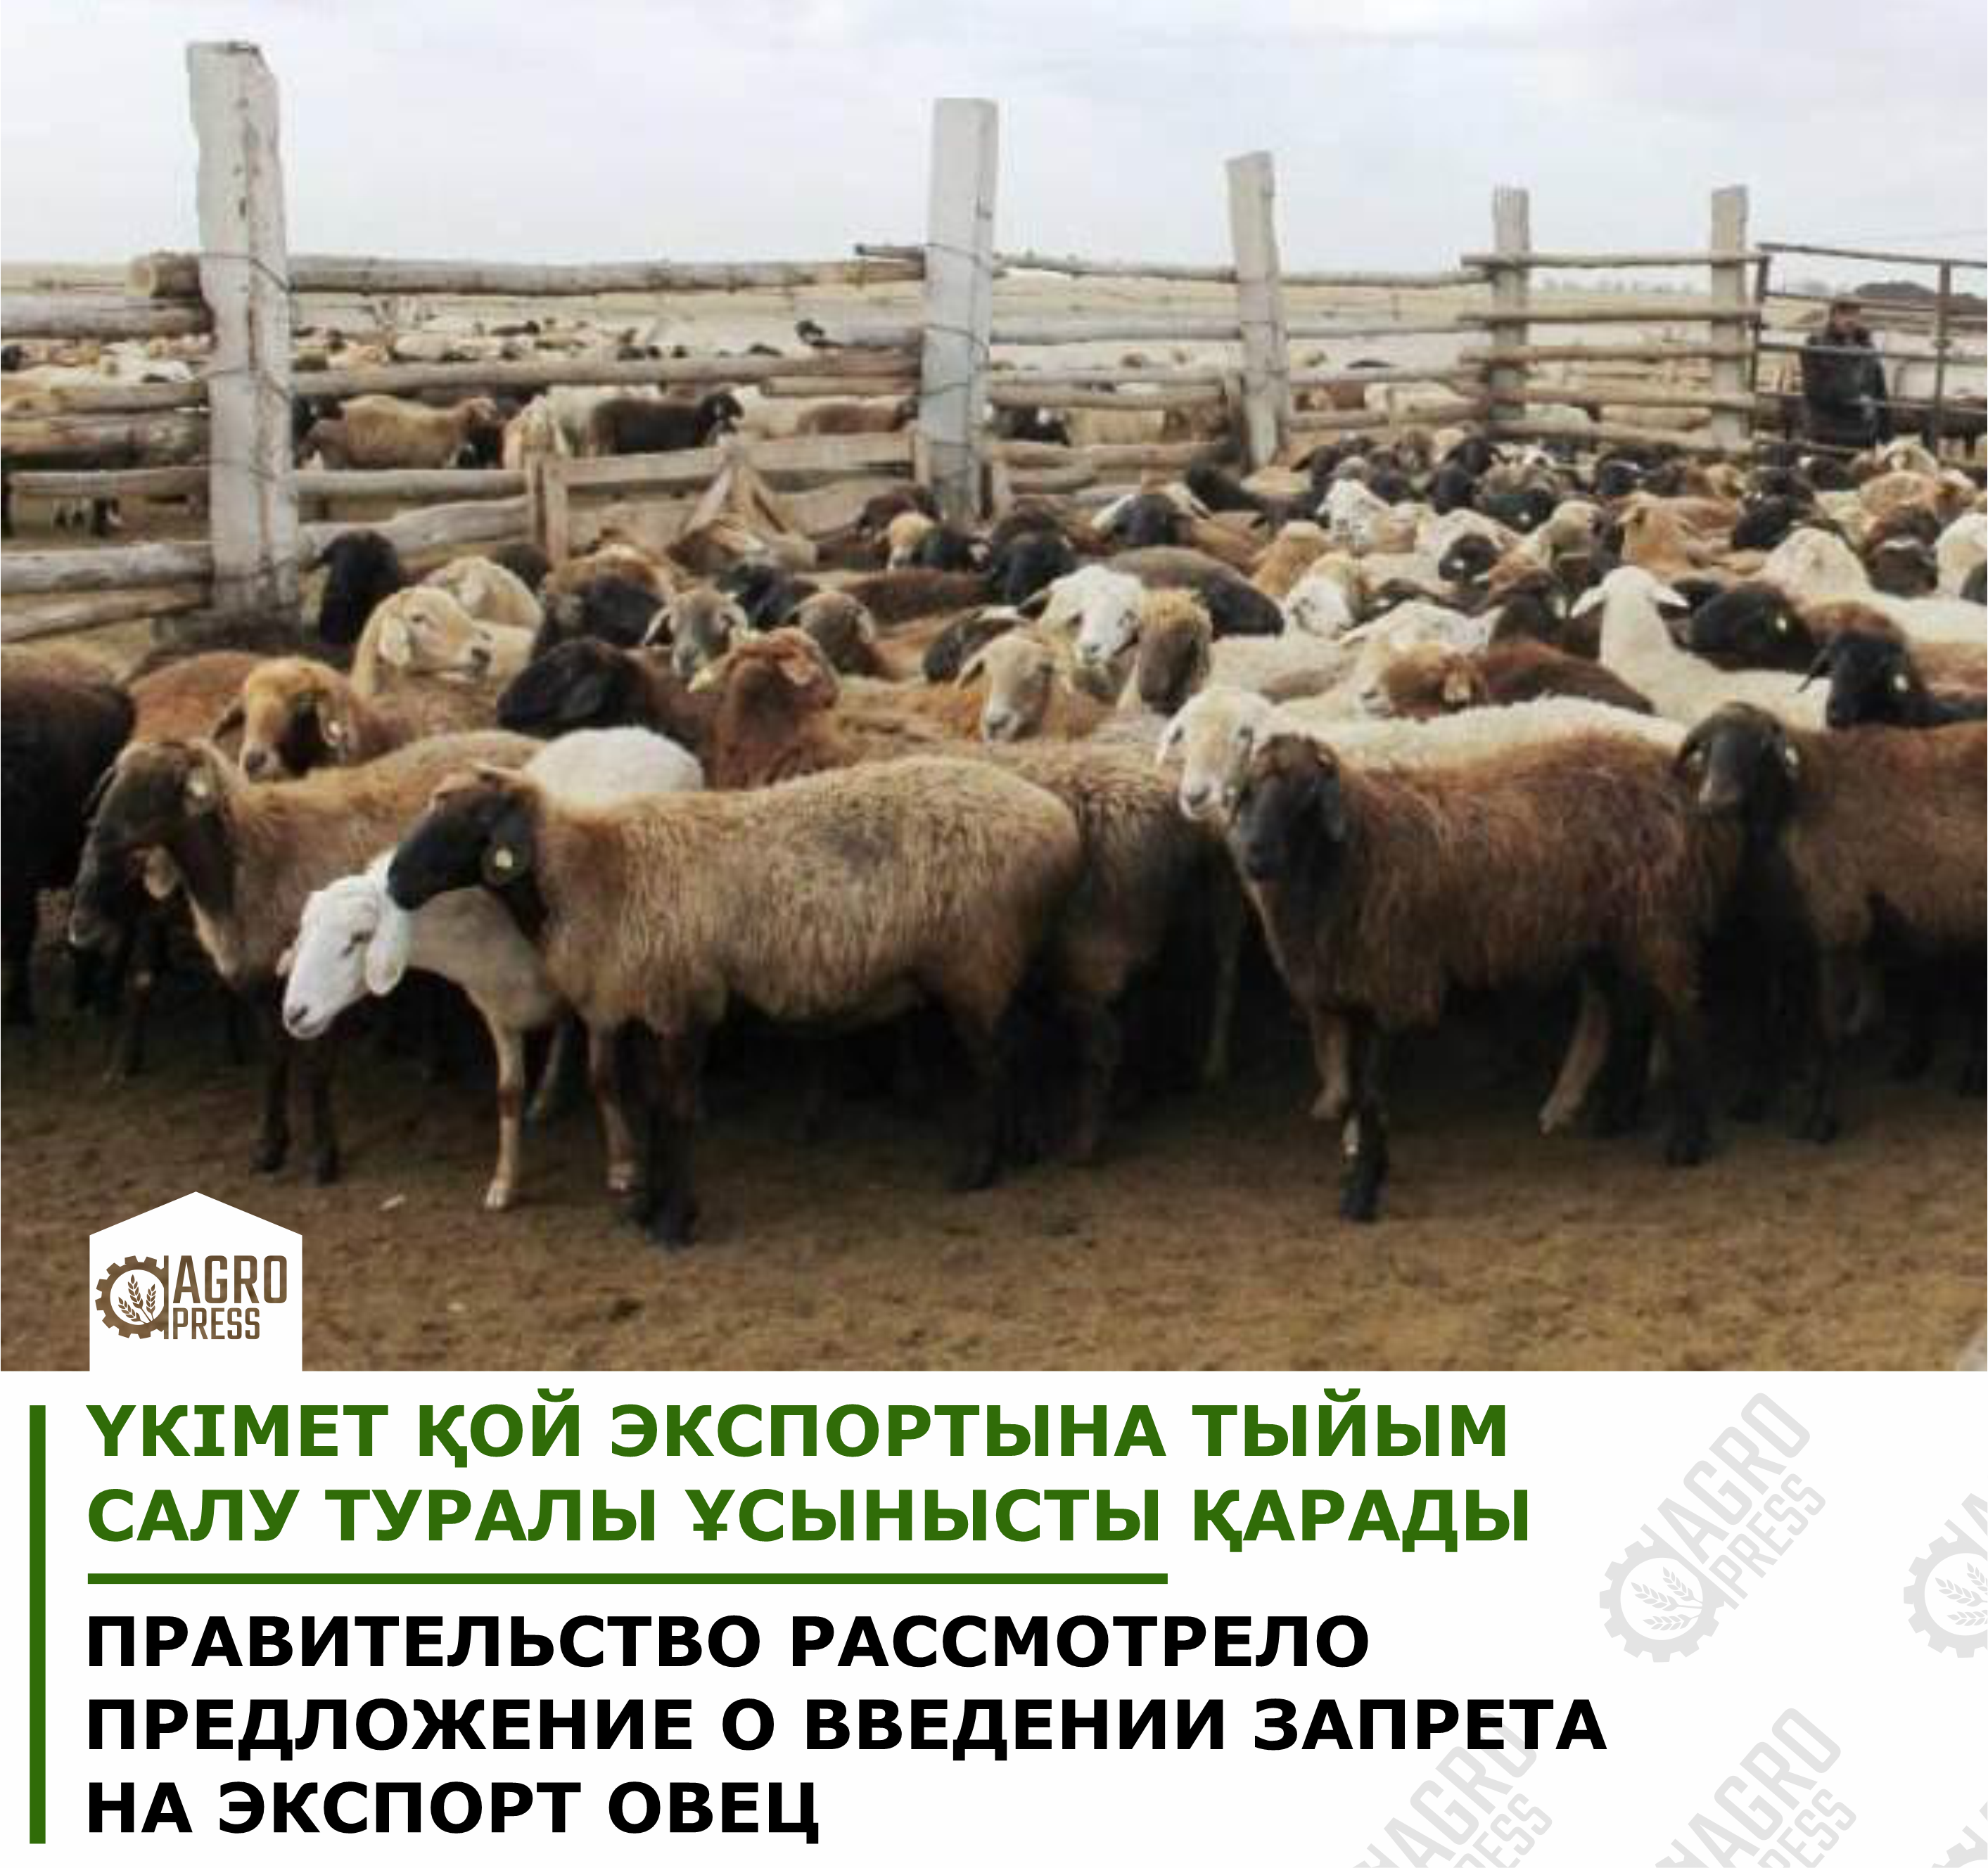 Правительство рассмотрело предложение о введении запрета на экспорт овец